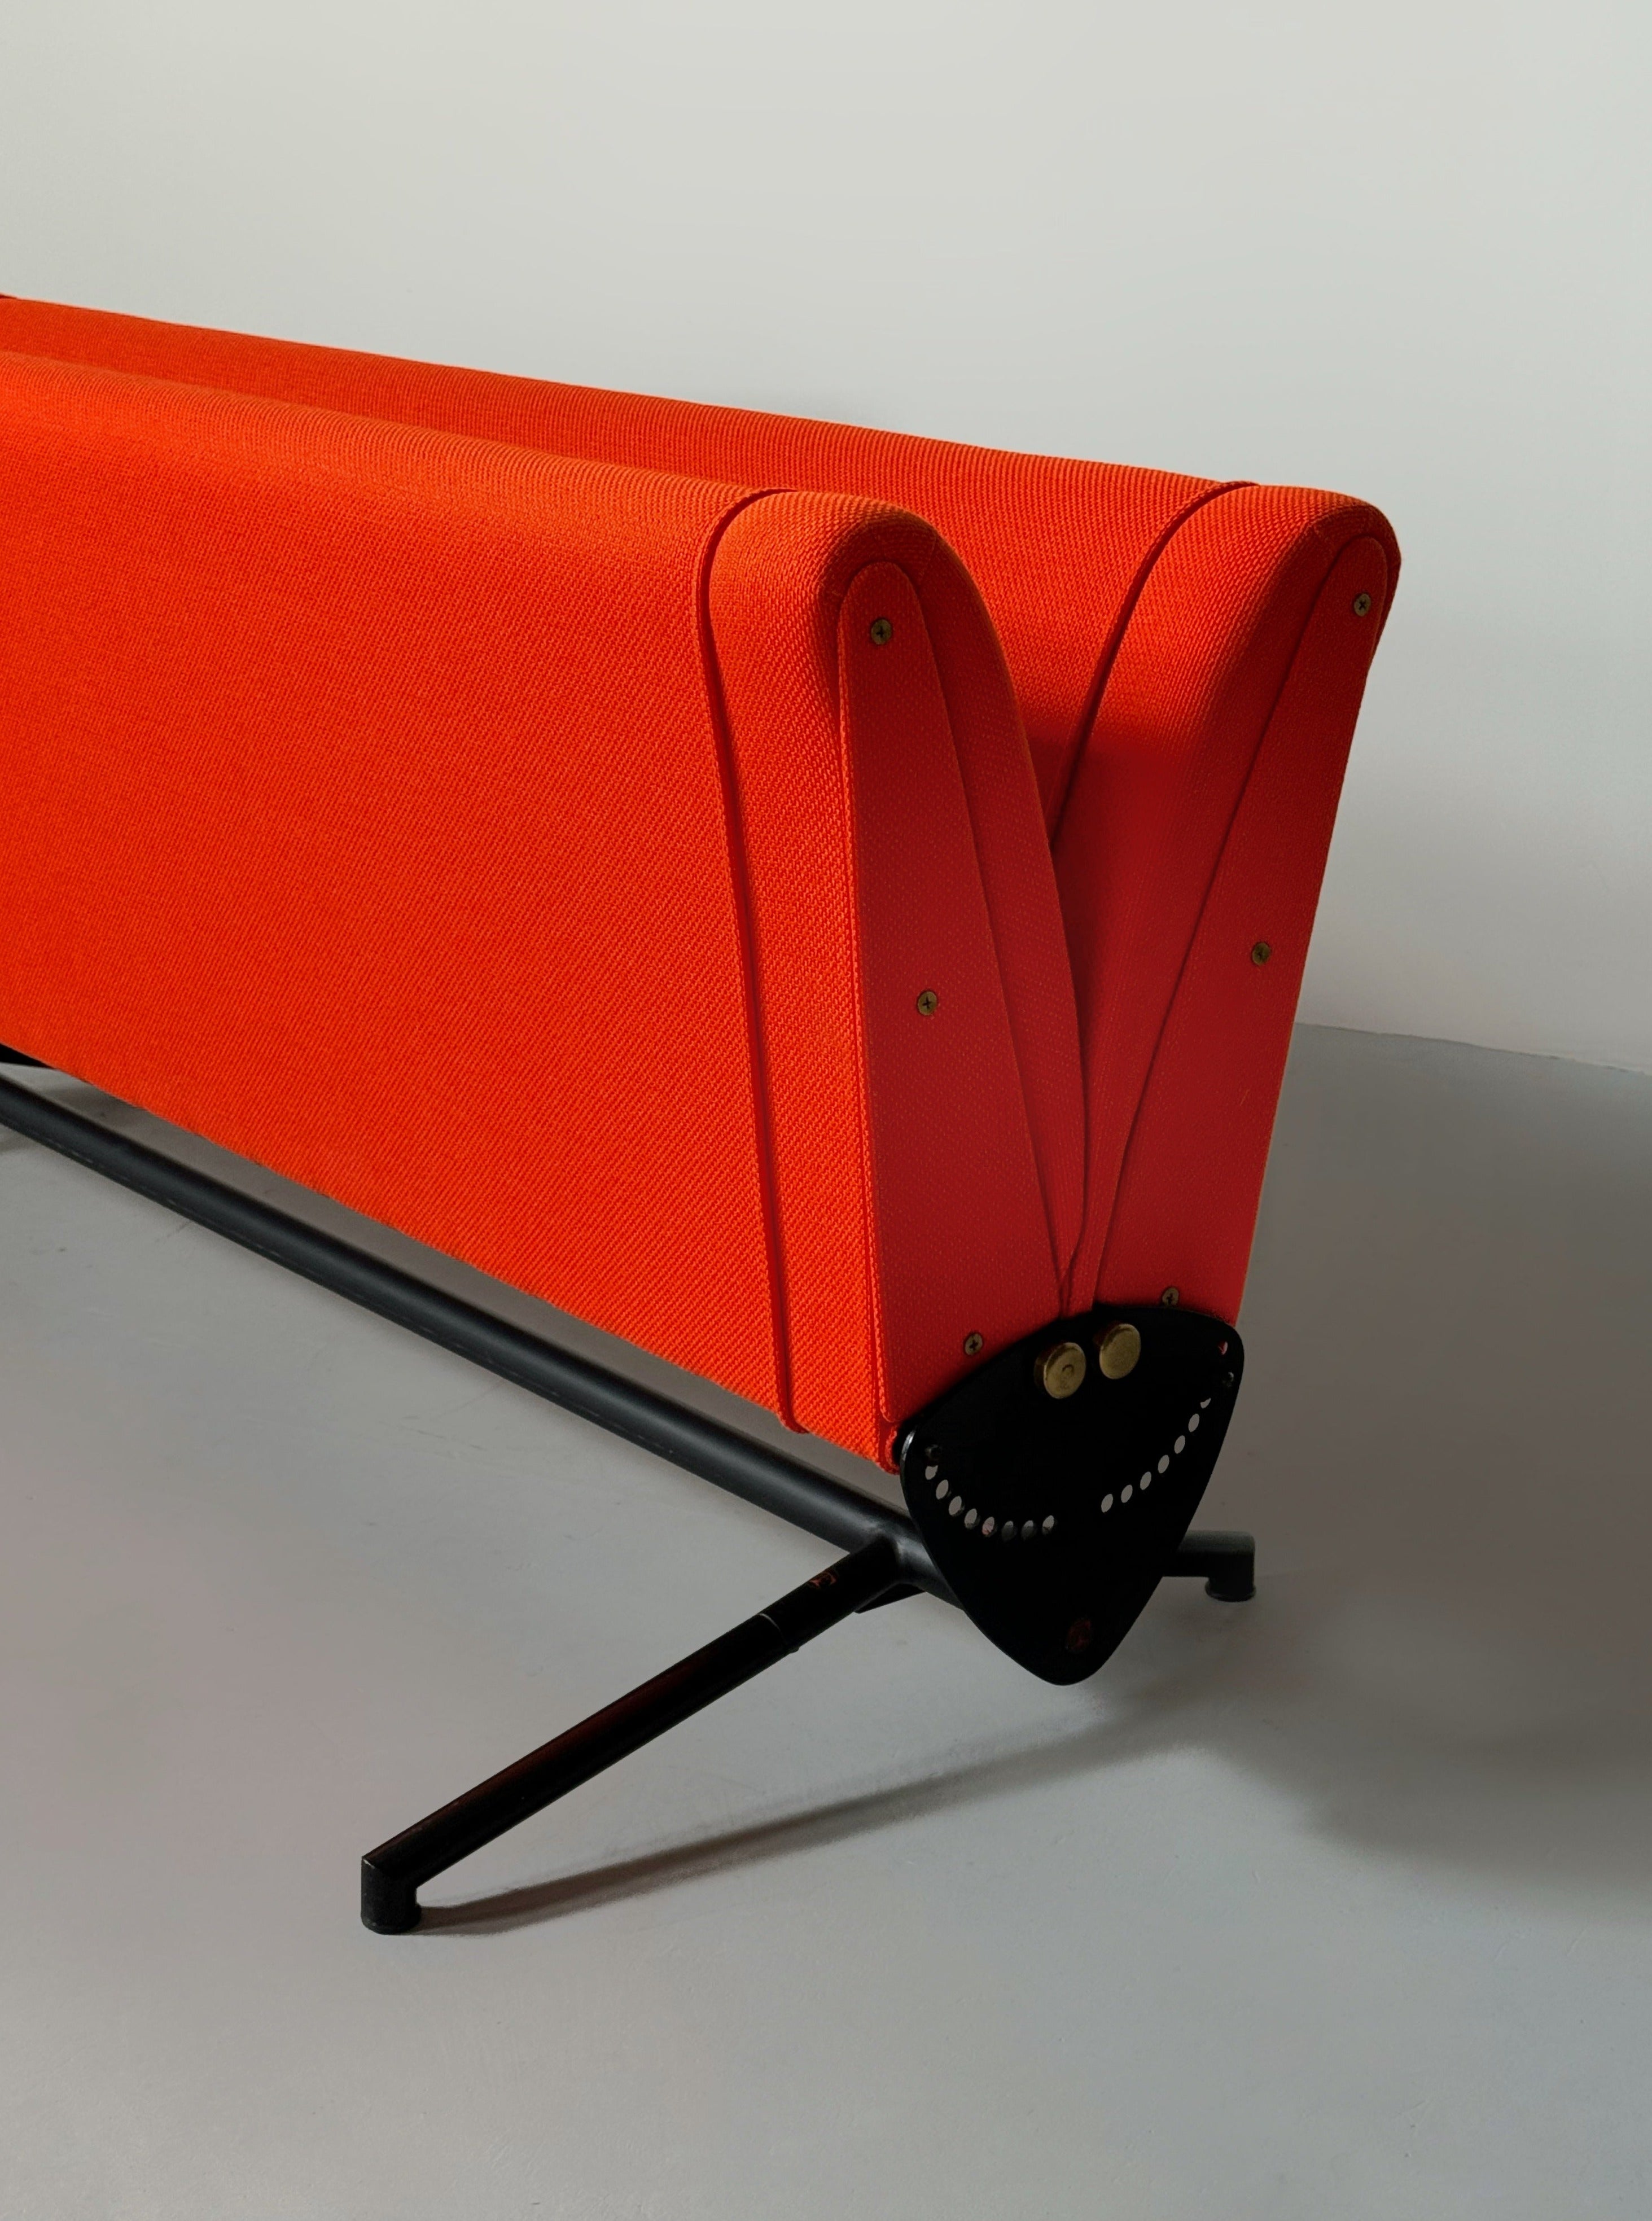 Sofa model D70 by Osvaldo Borsani for Tecno, Italy